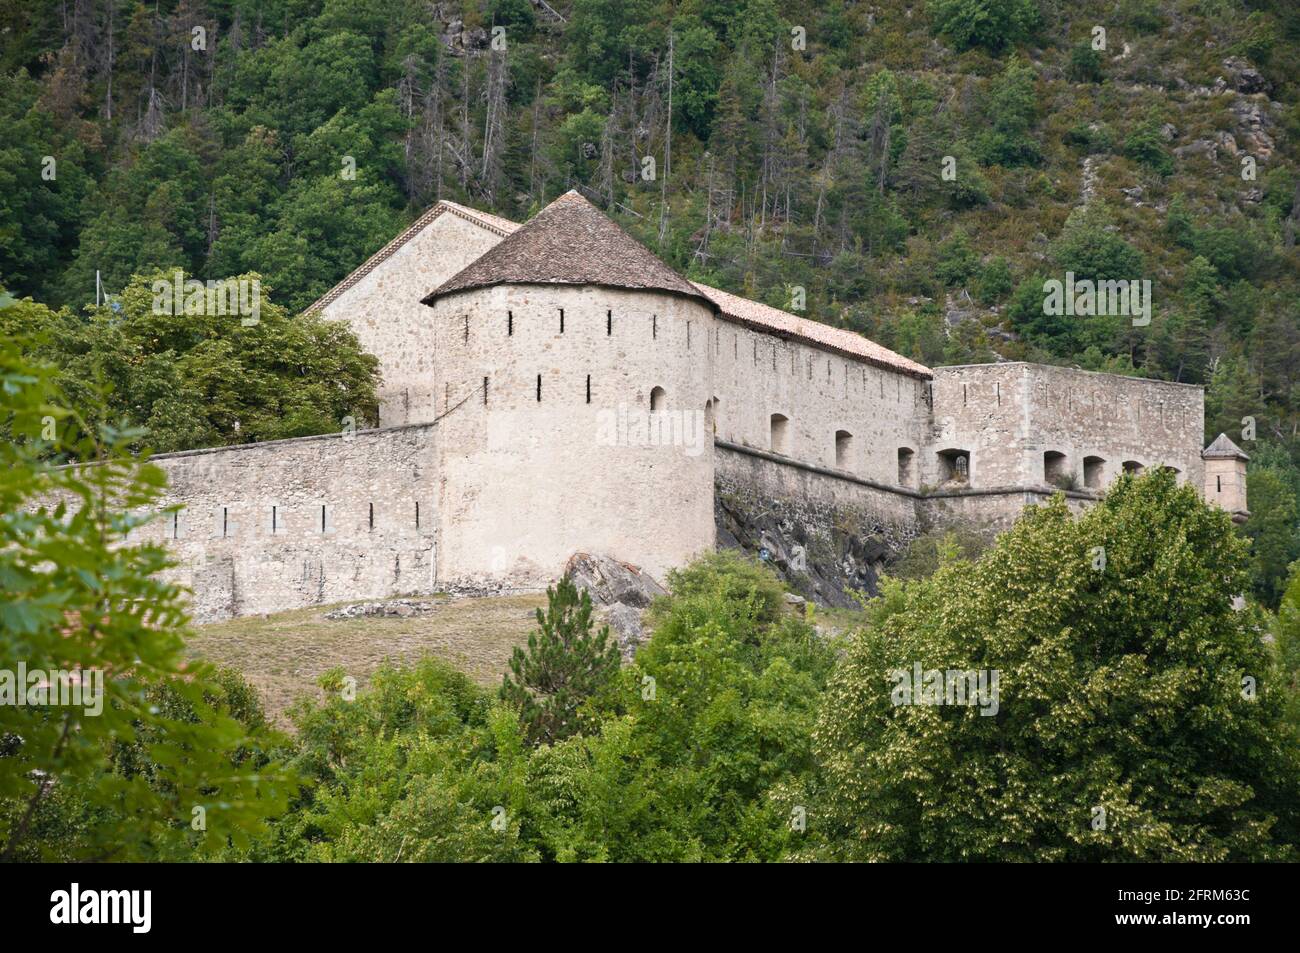 Festung Saint-Martin (Festung Desaix), als historisches Monument gelistet, Colmars-les-Alpes, Alpes-de-Haute-Provence (04), Region Provence-Alpes-Cote d'Azur, Fr. Stockfoto